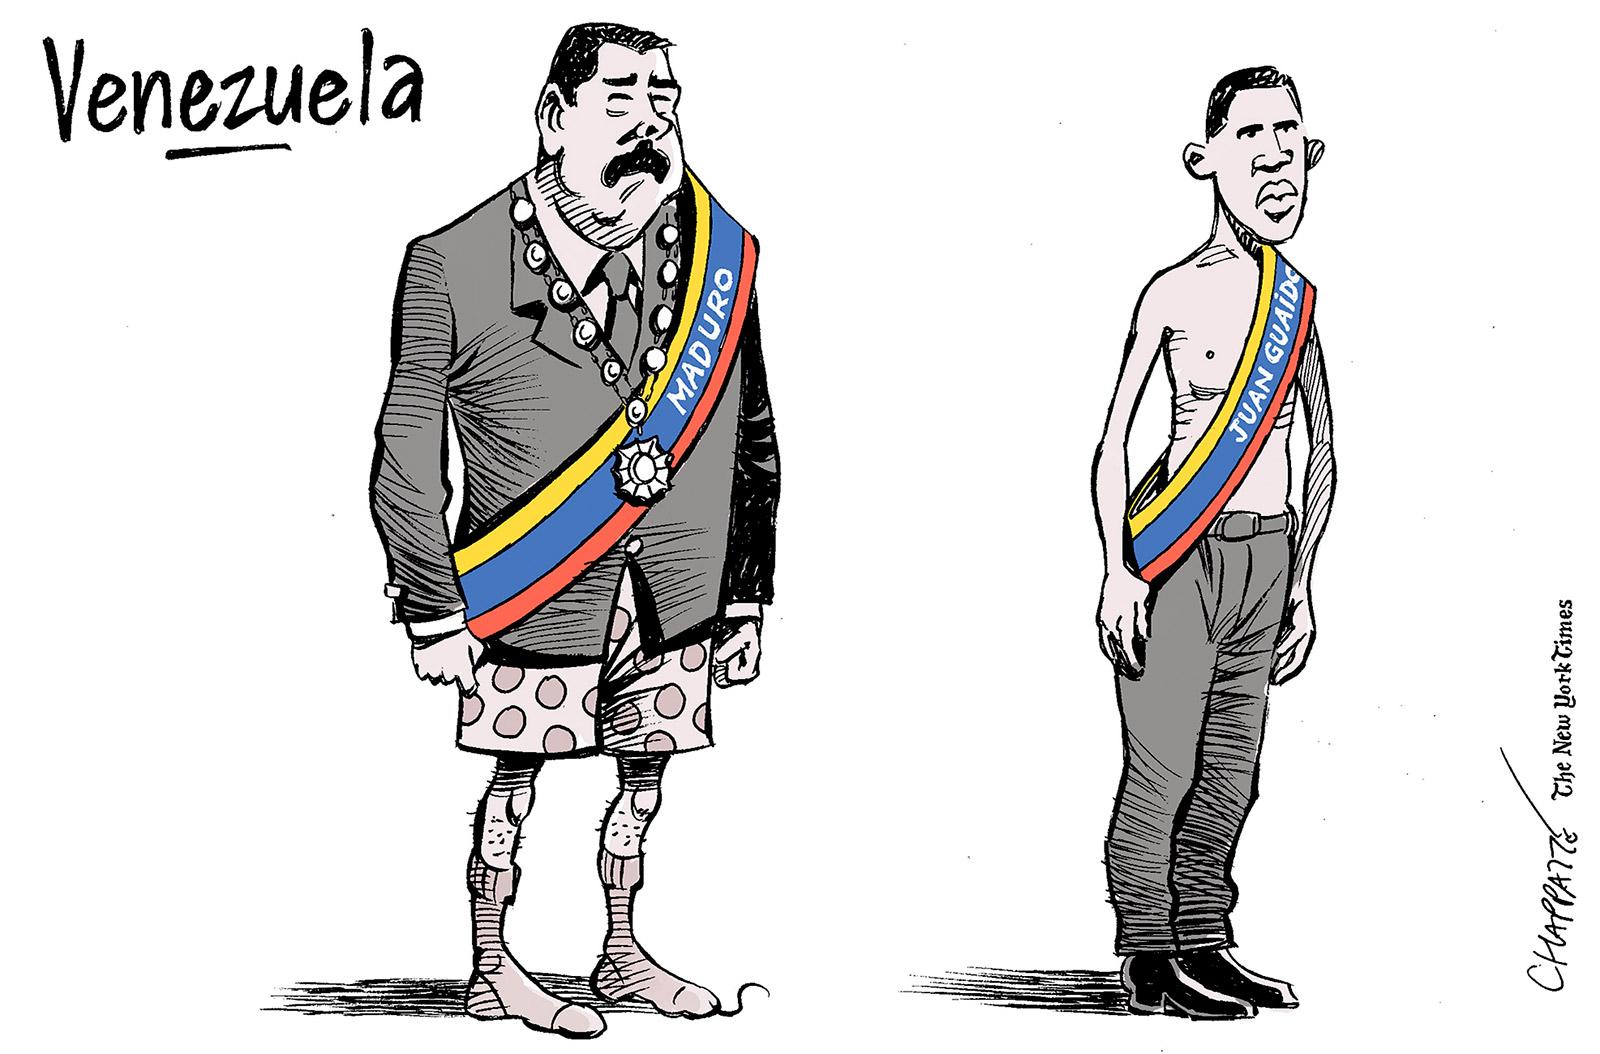 Two presidents in Venezuela